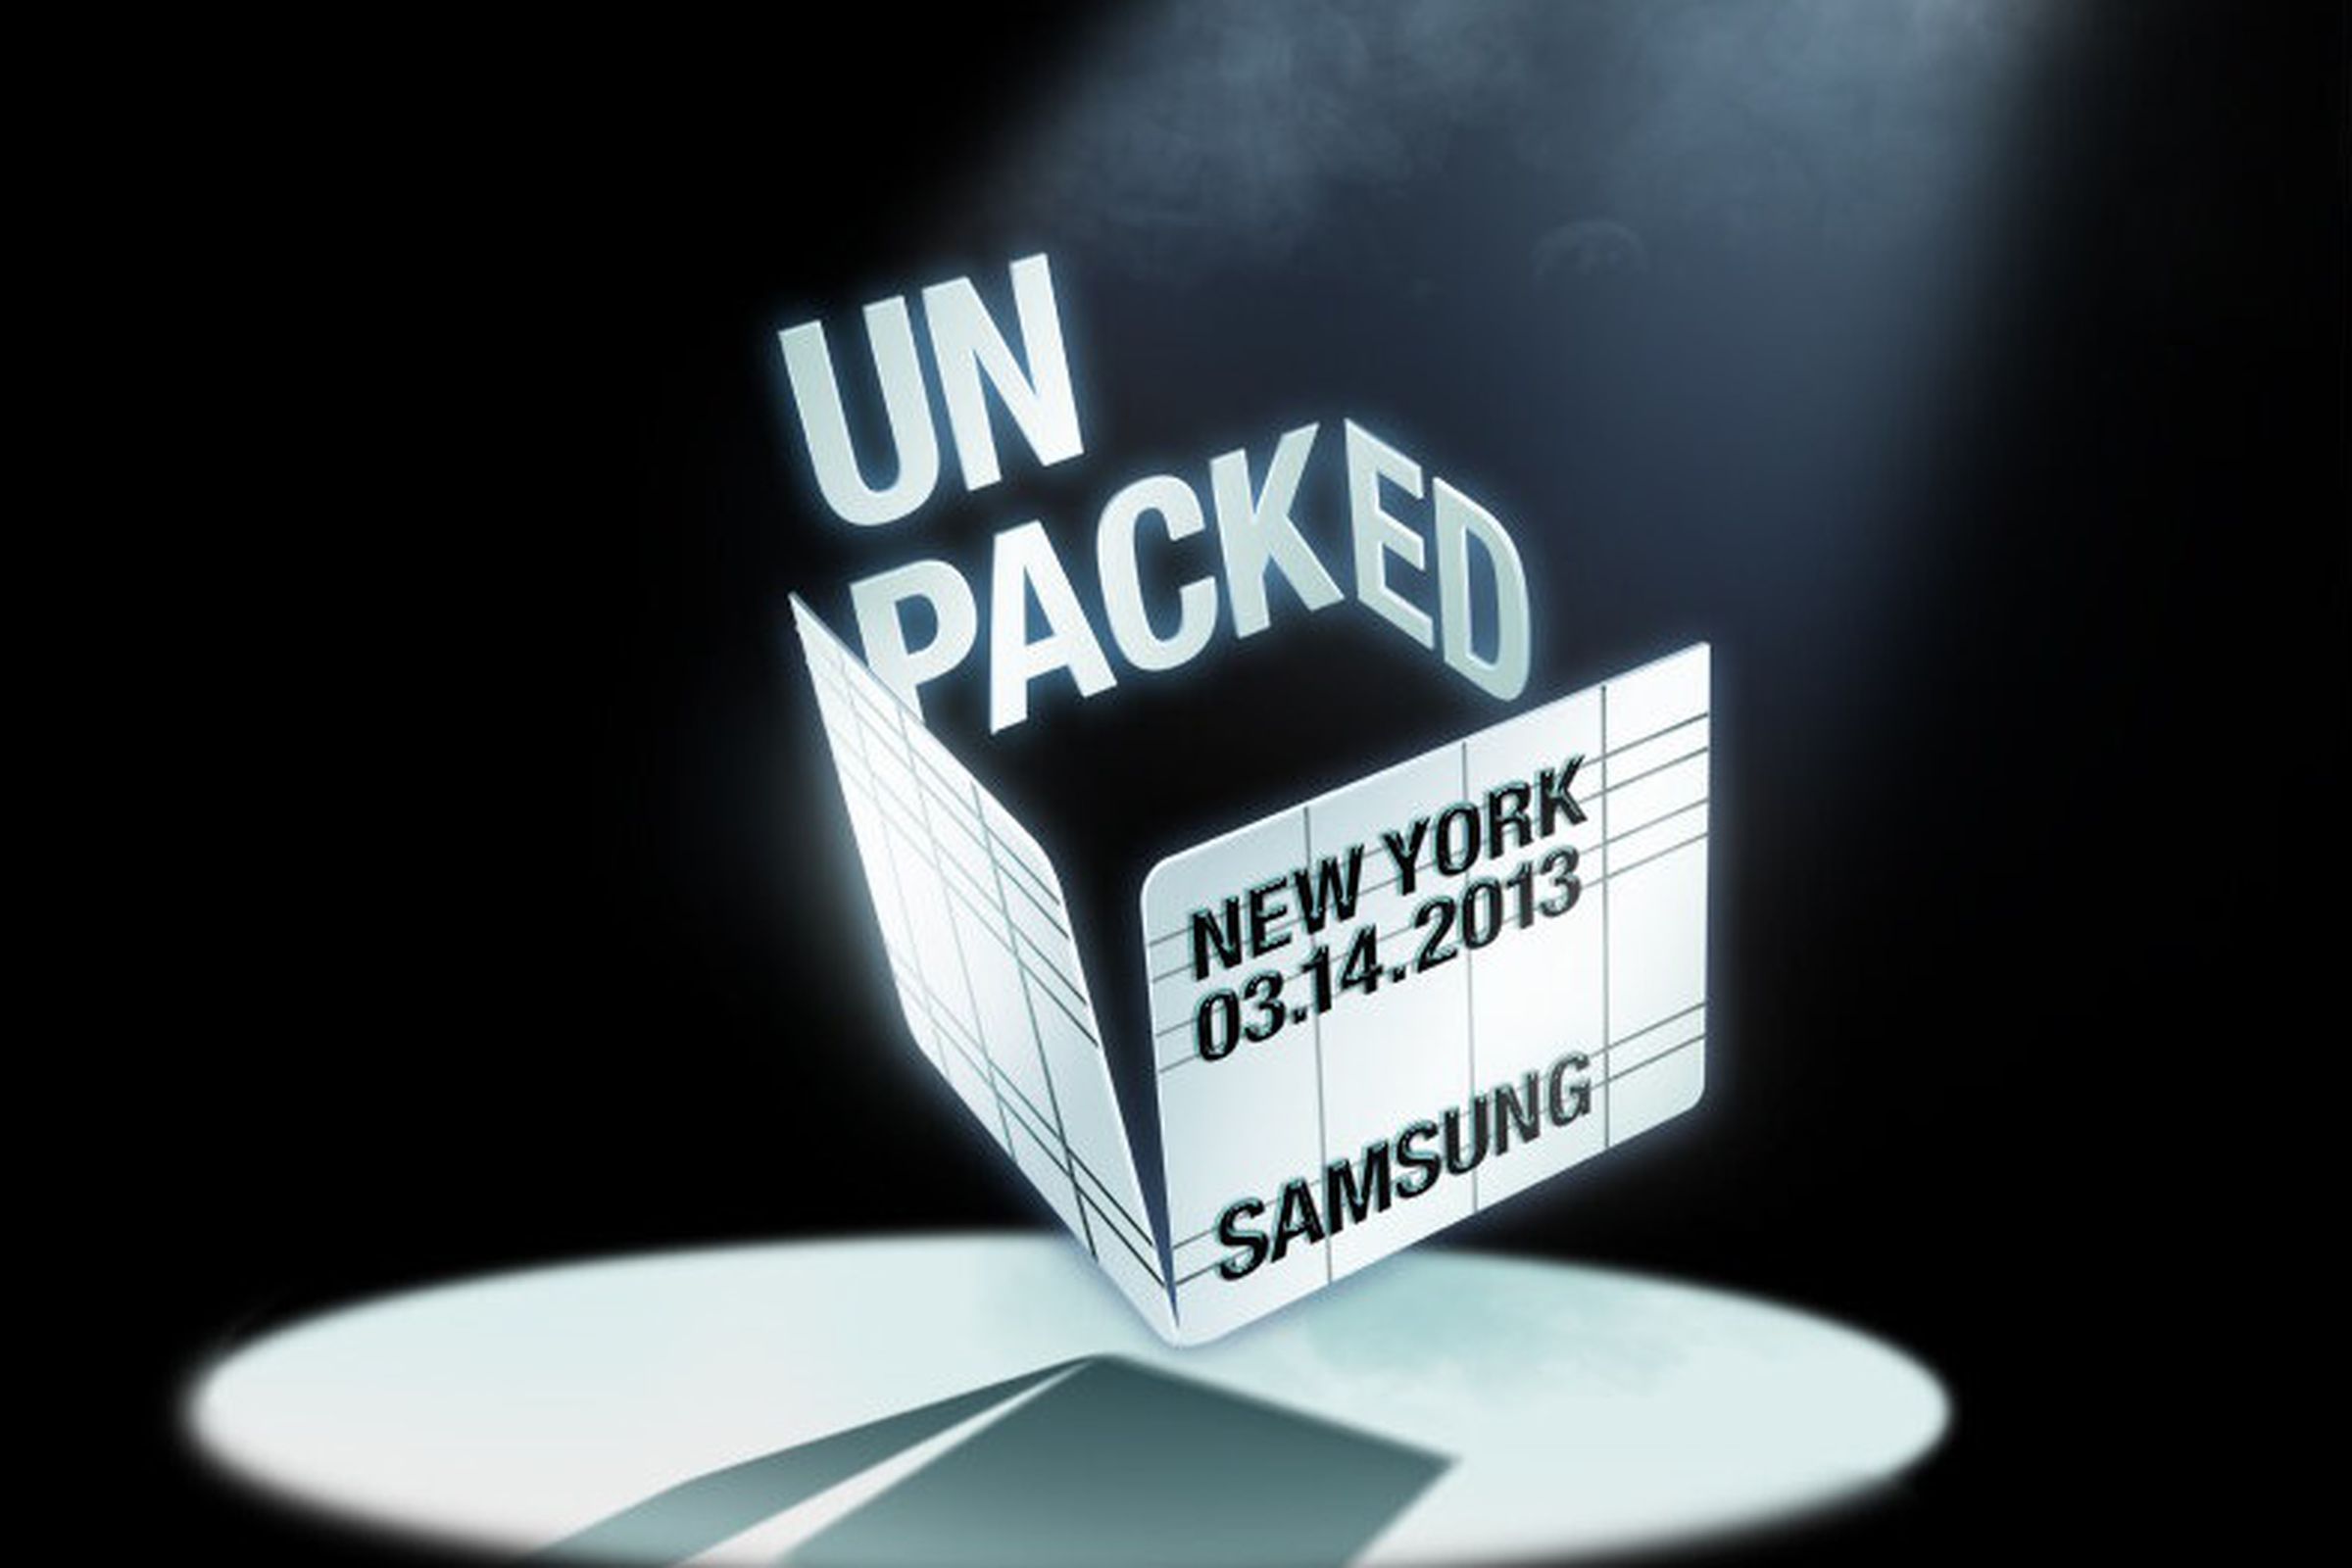 Samsung unpacked